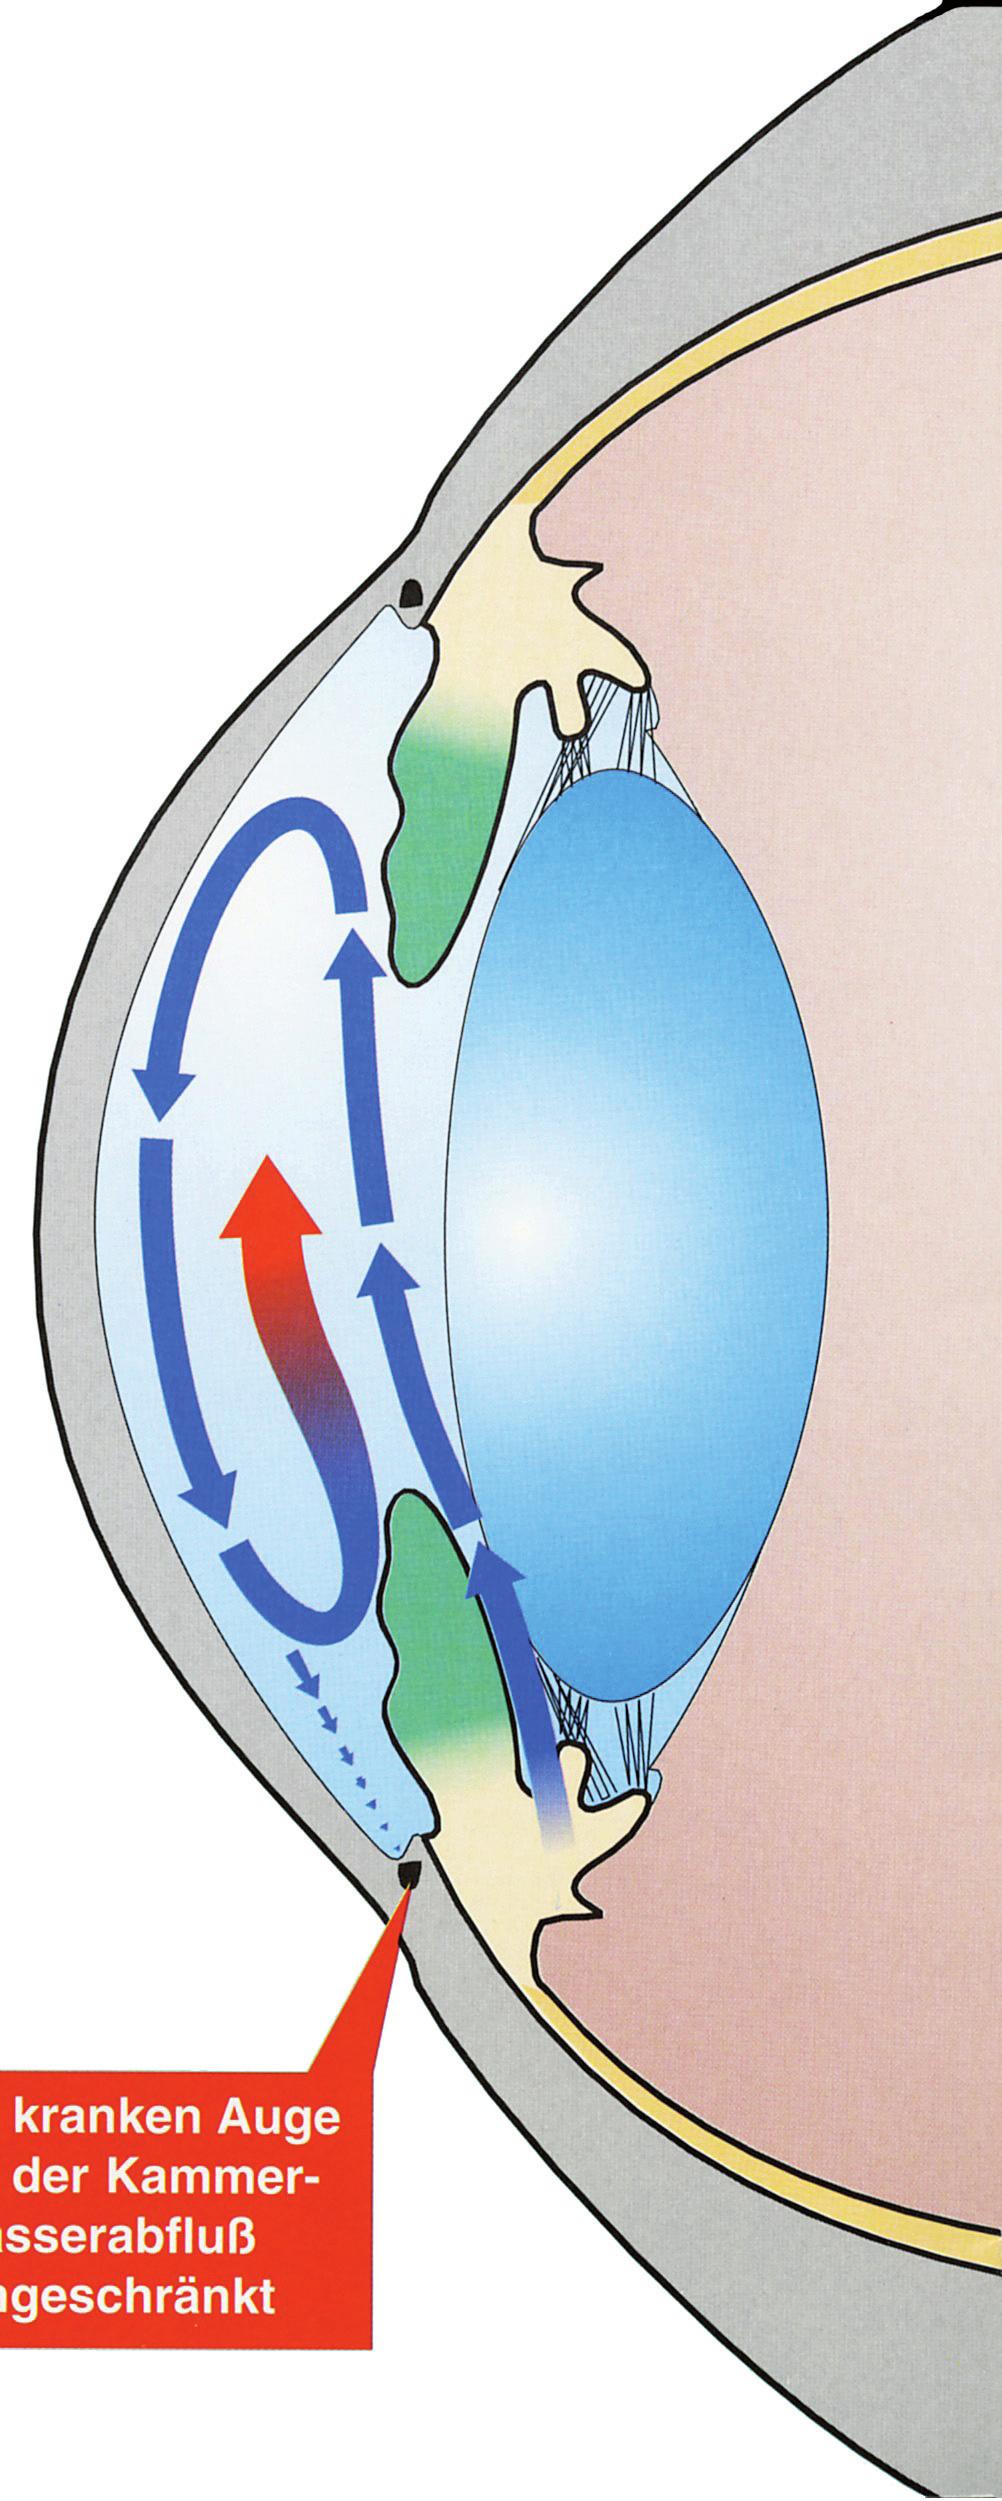 Was ist ein Glaukom? Ein Glaukom ist eine Augenerkrankung, die meist mit einem erhöhten Augeninnendruck einhergeht. Die Erhöhung wird durch eine Behinderung des Kammerwasserabflusses ausgelöst.